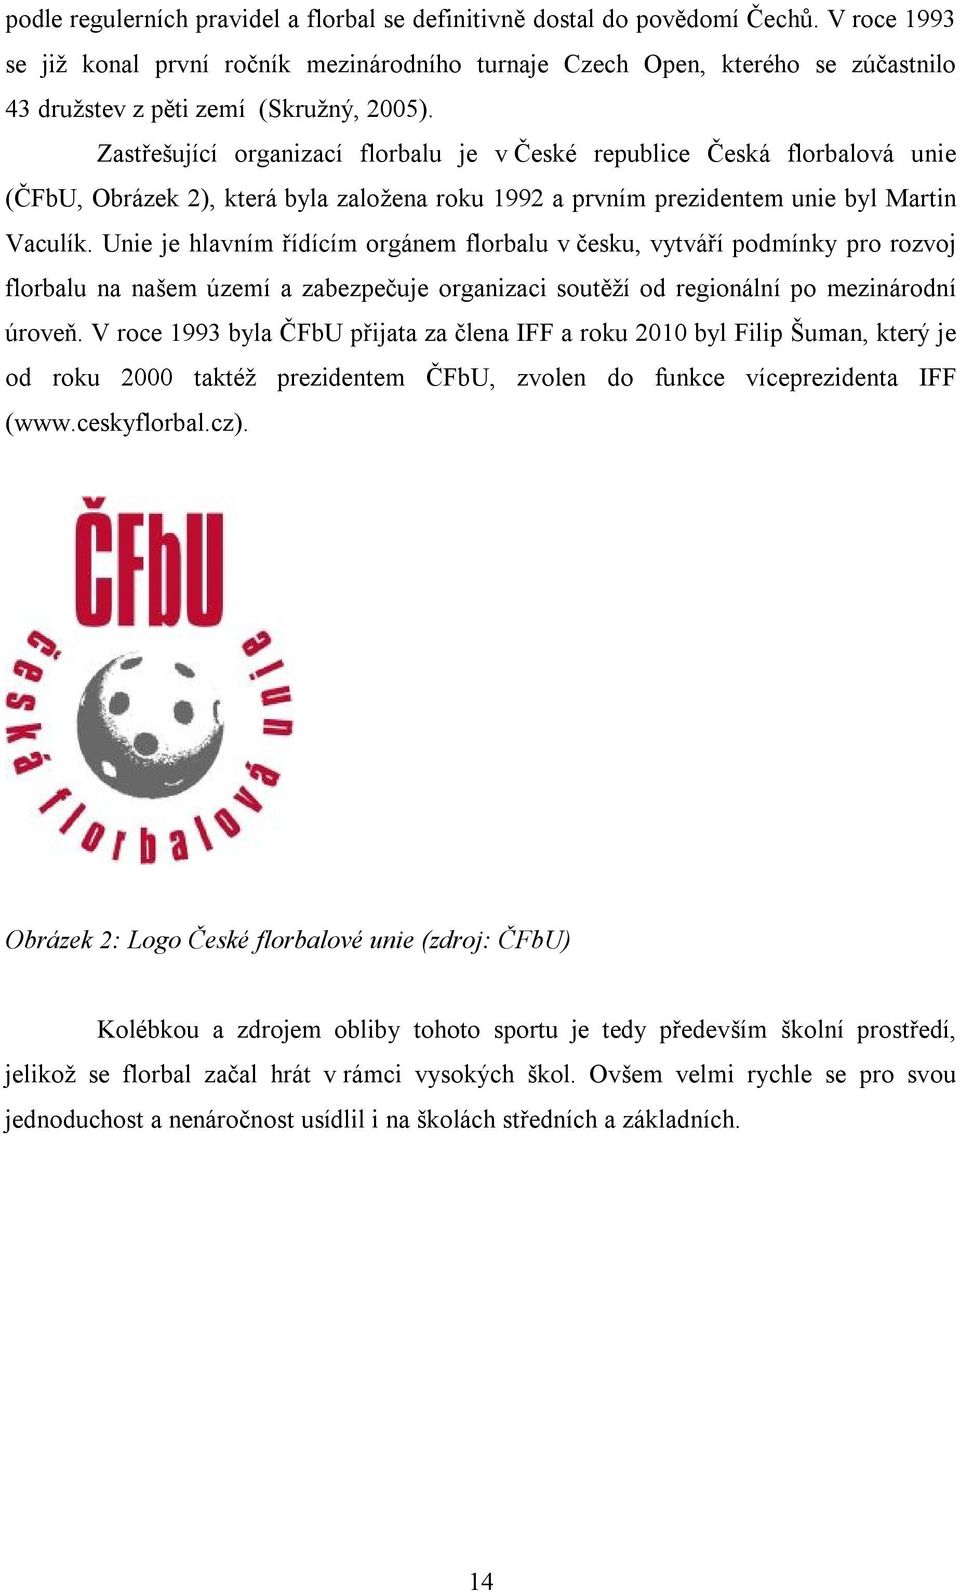 Zastřešující organizací florbalu je v České republice Česká florbalová unie (ČFbU, Obrázek 2), která byla založena roku 1992 a prvním prezidentem unie byl Martin Vaculík.